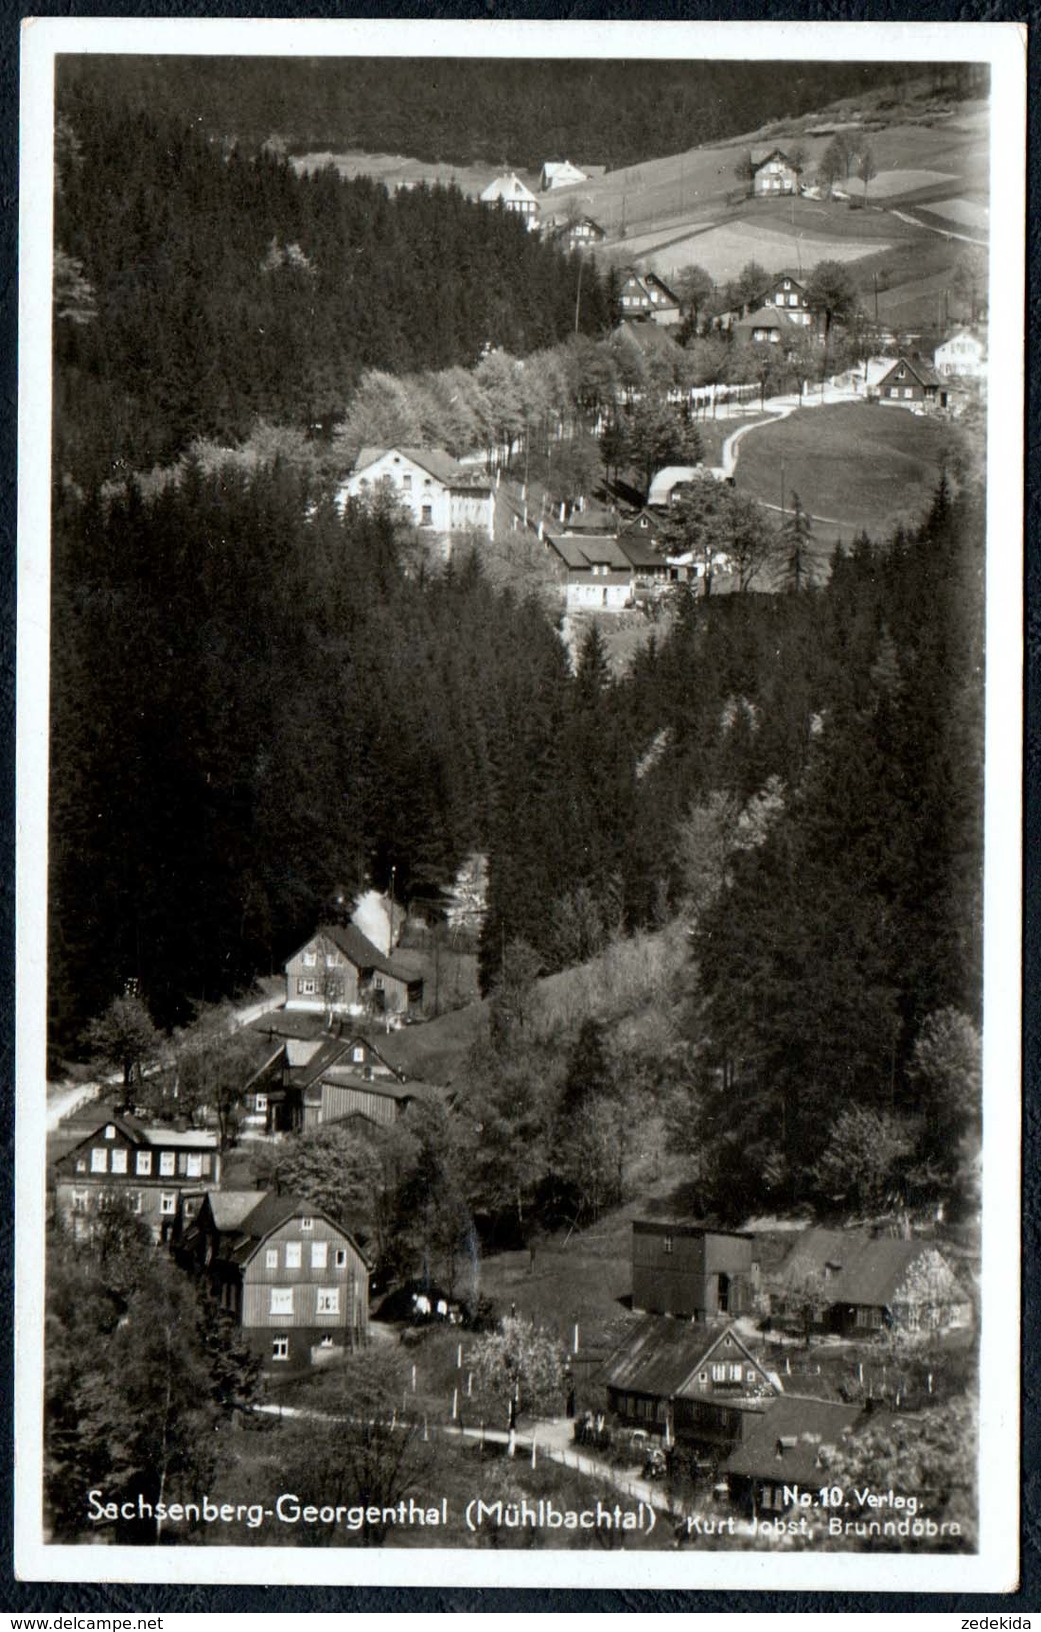 A8428 - Sachsenberg Georgenthal - Mühlbachtal - Aschberg - Kurt Jobst Brunndöbra - Gel 1938 - Klingenthal